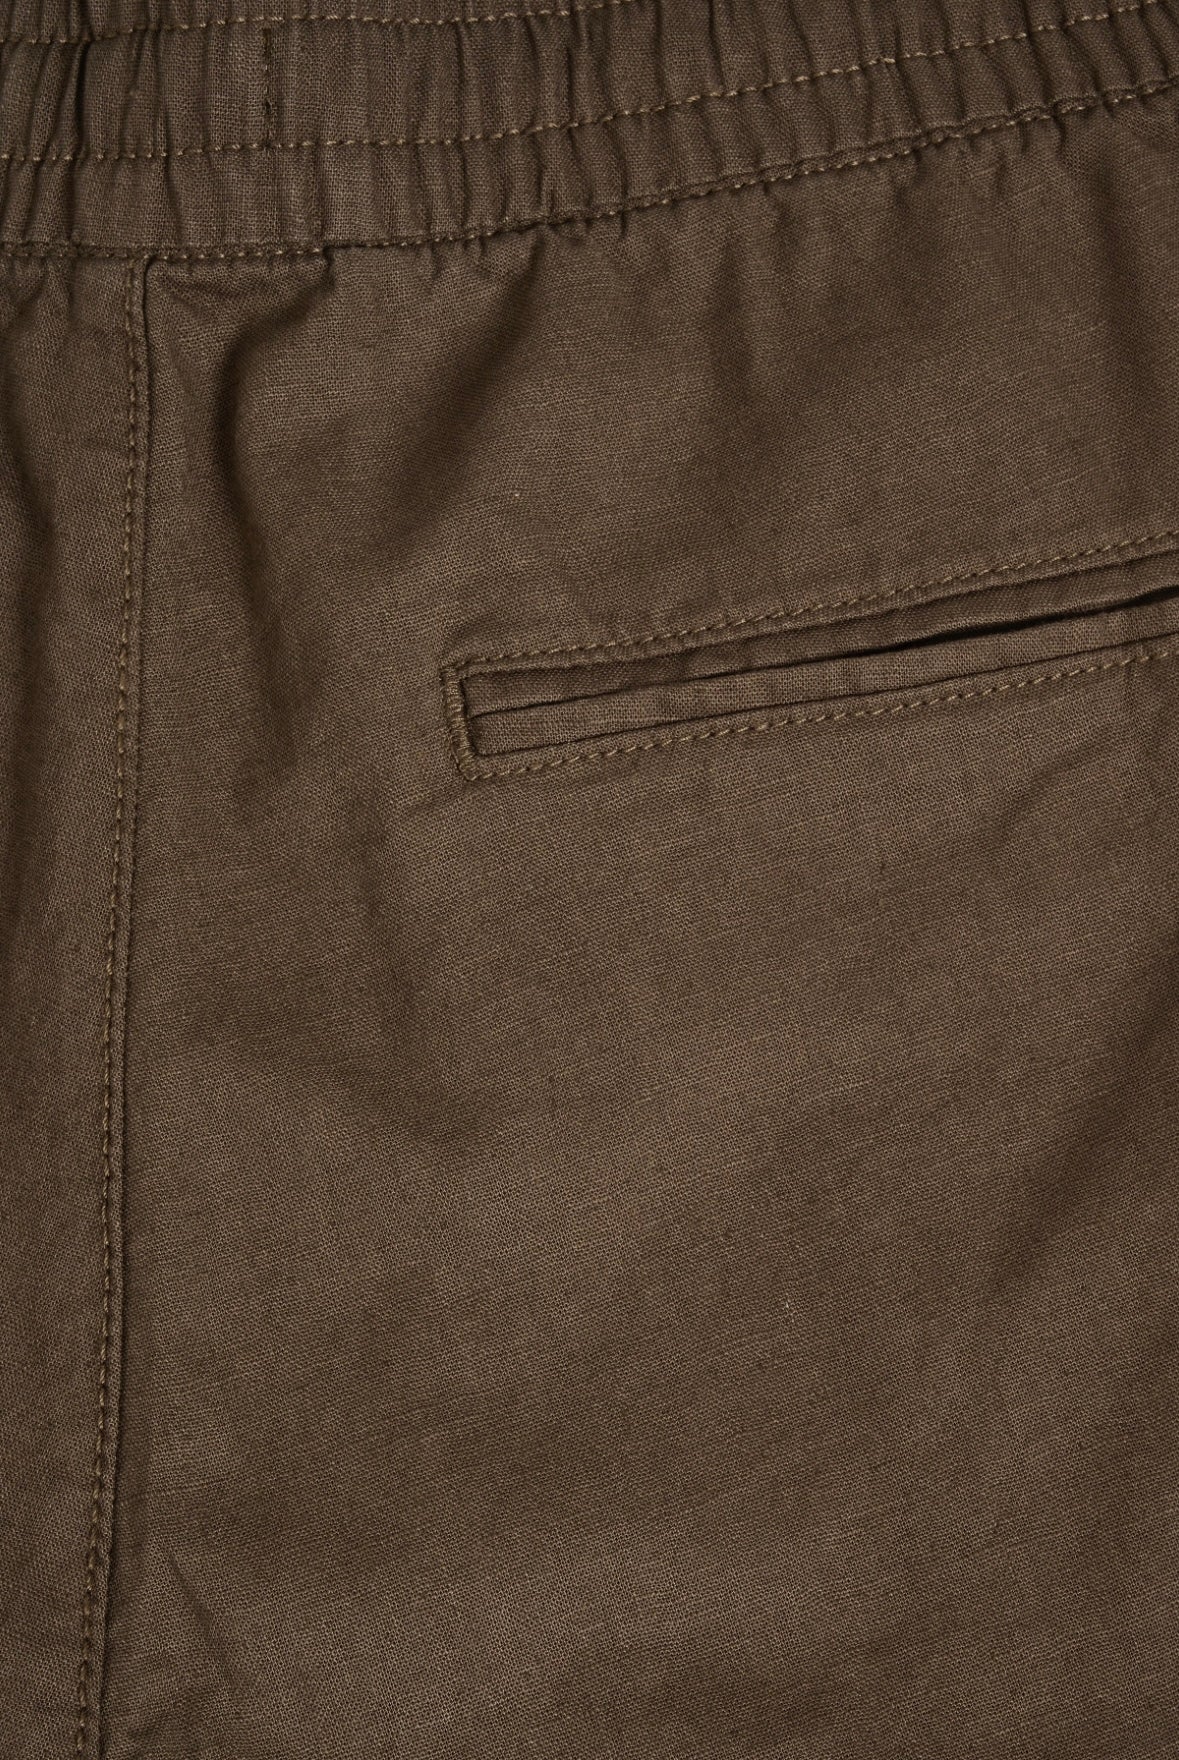 Matinique Barton shorts - Brown Soil